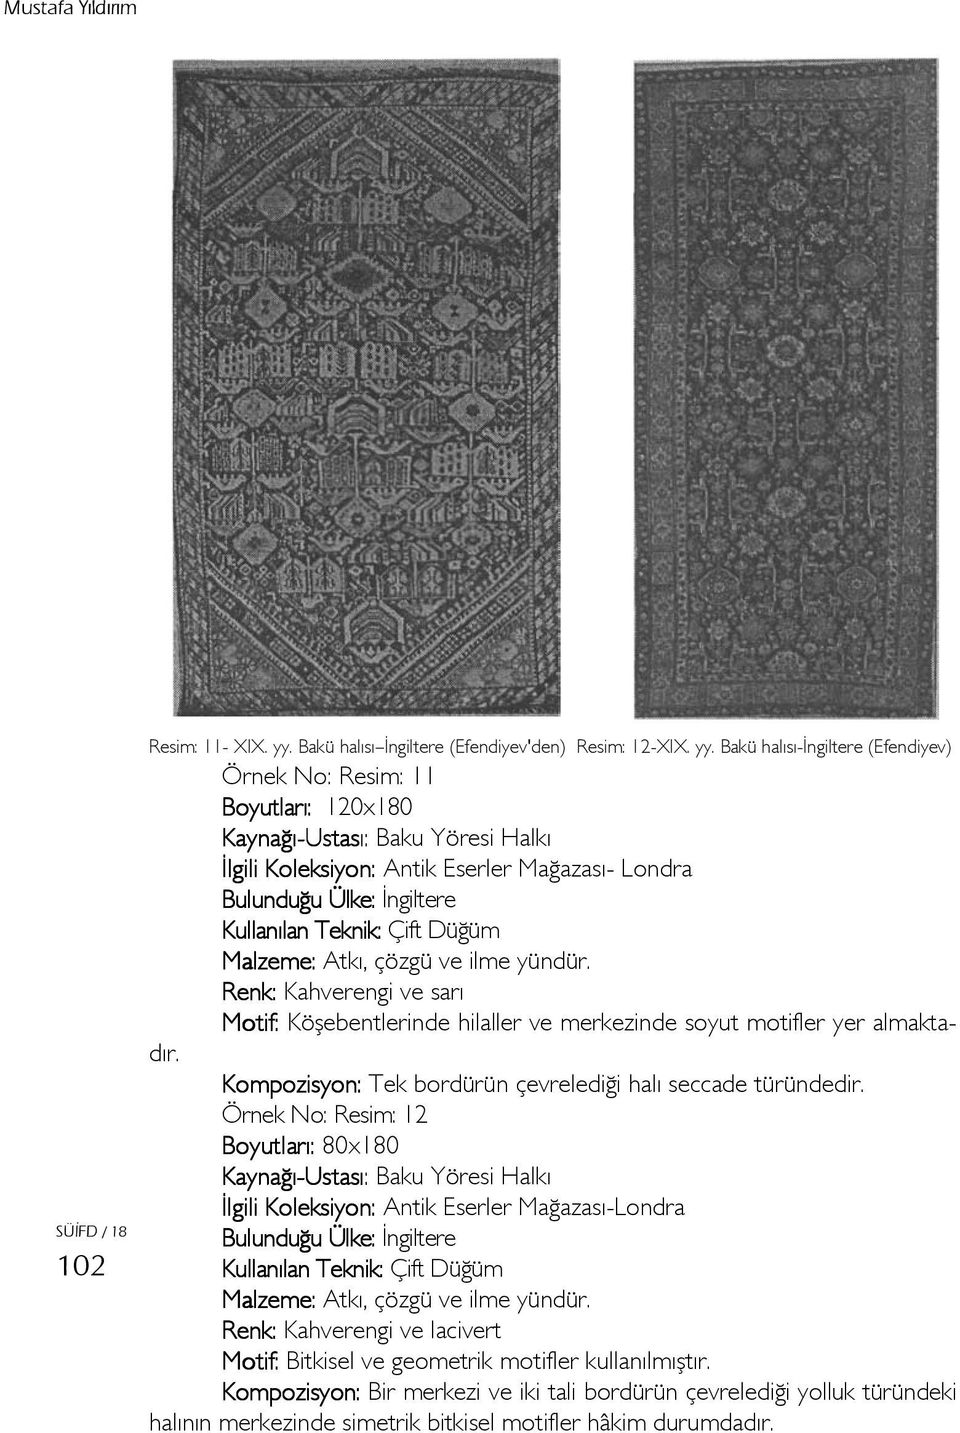 Bakü halısı-ingiltere (Efendiyev) Örnek No: Resim: 11 Boyutları: 120x180 Baku Yöresi Halkı İlgili Koleksiyon: Antik Eserler Mağazası- Londra Bulunduğu Ülke: İngiltere Kullanılan Teknik: Çift Düğüm